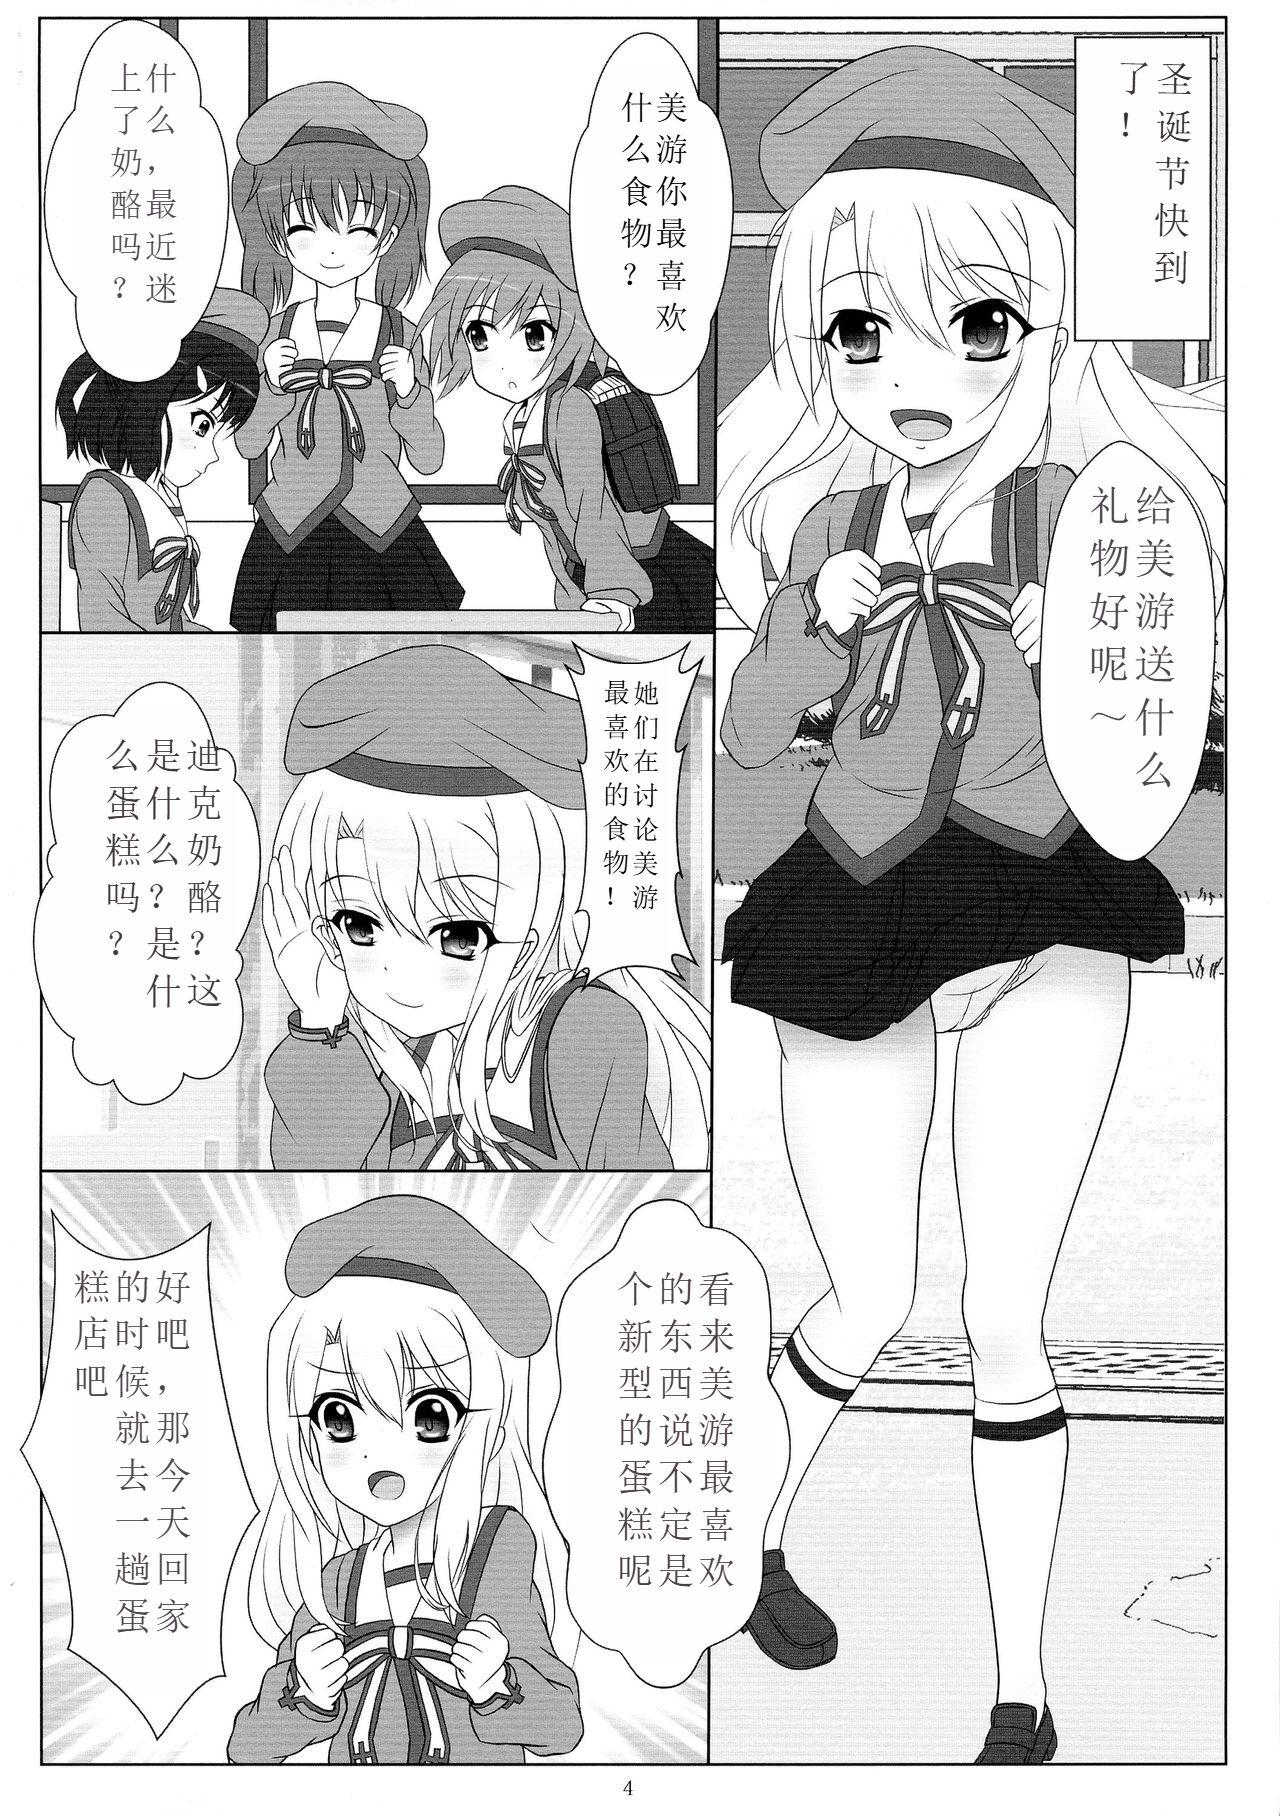 Trans Jouzu ni Dekimashita! - Fate kaleid liner prisma illya Free Blow Job - Page 4